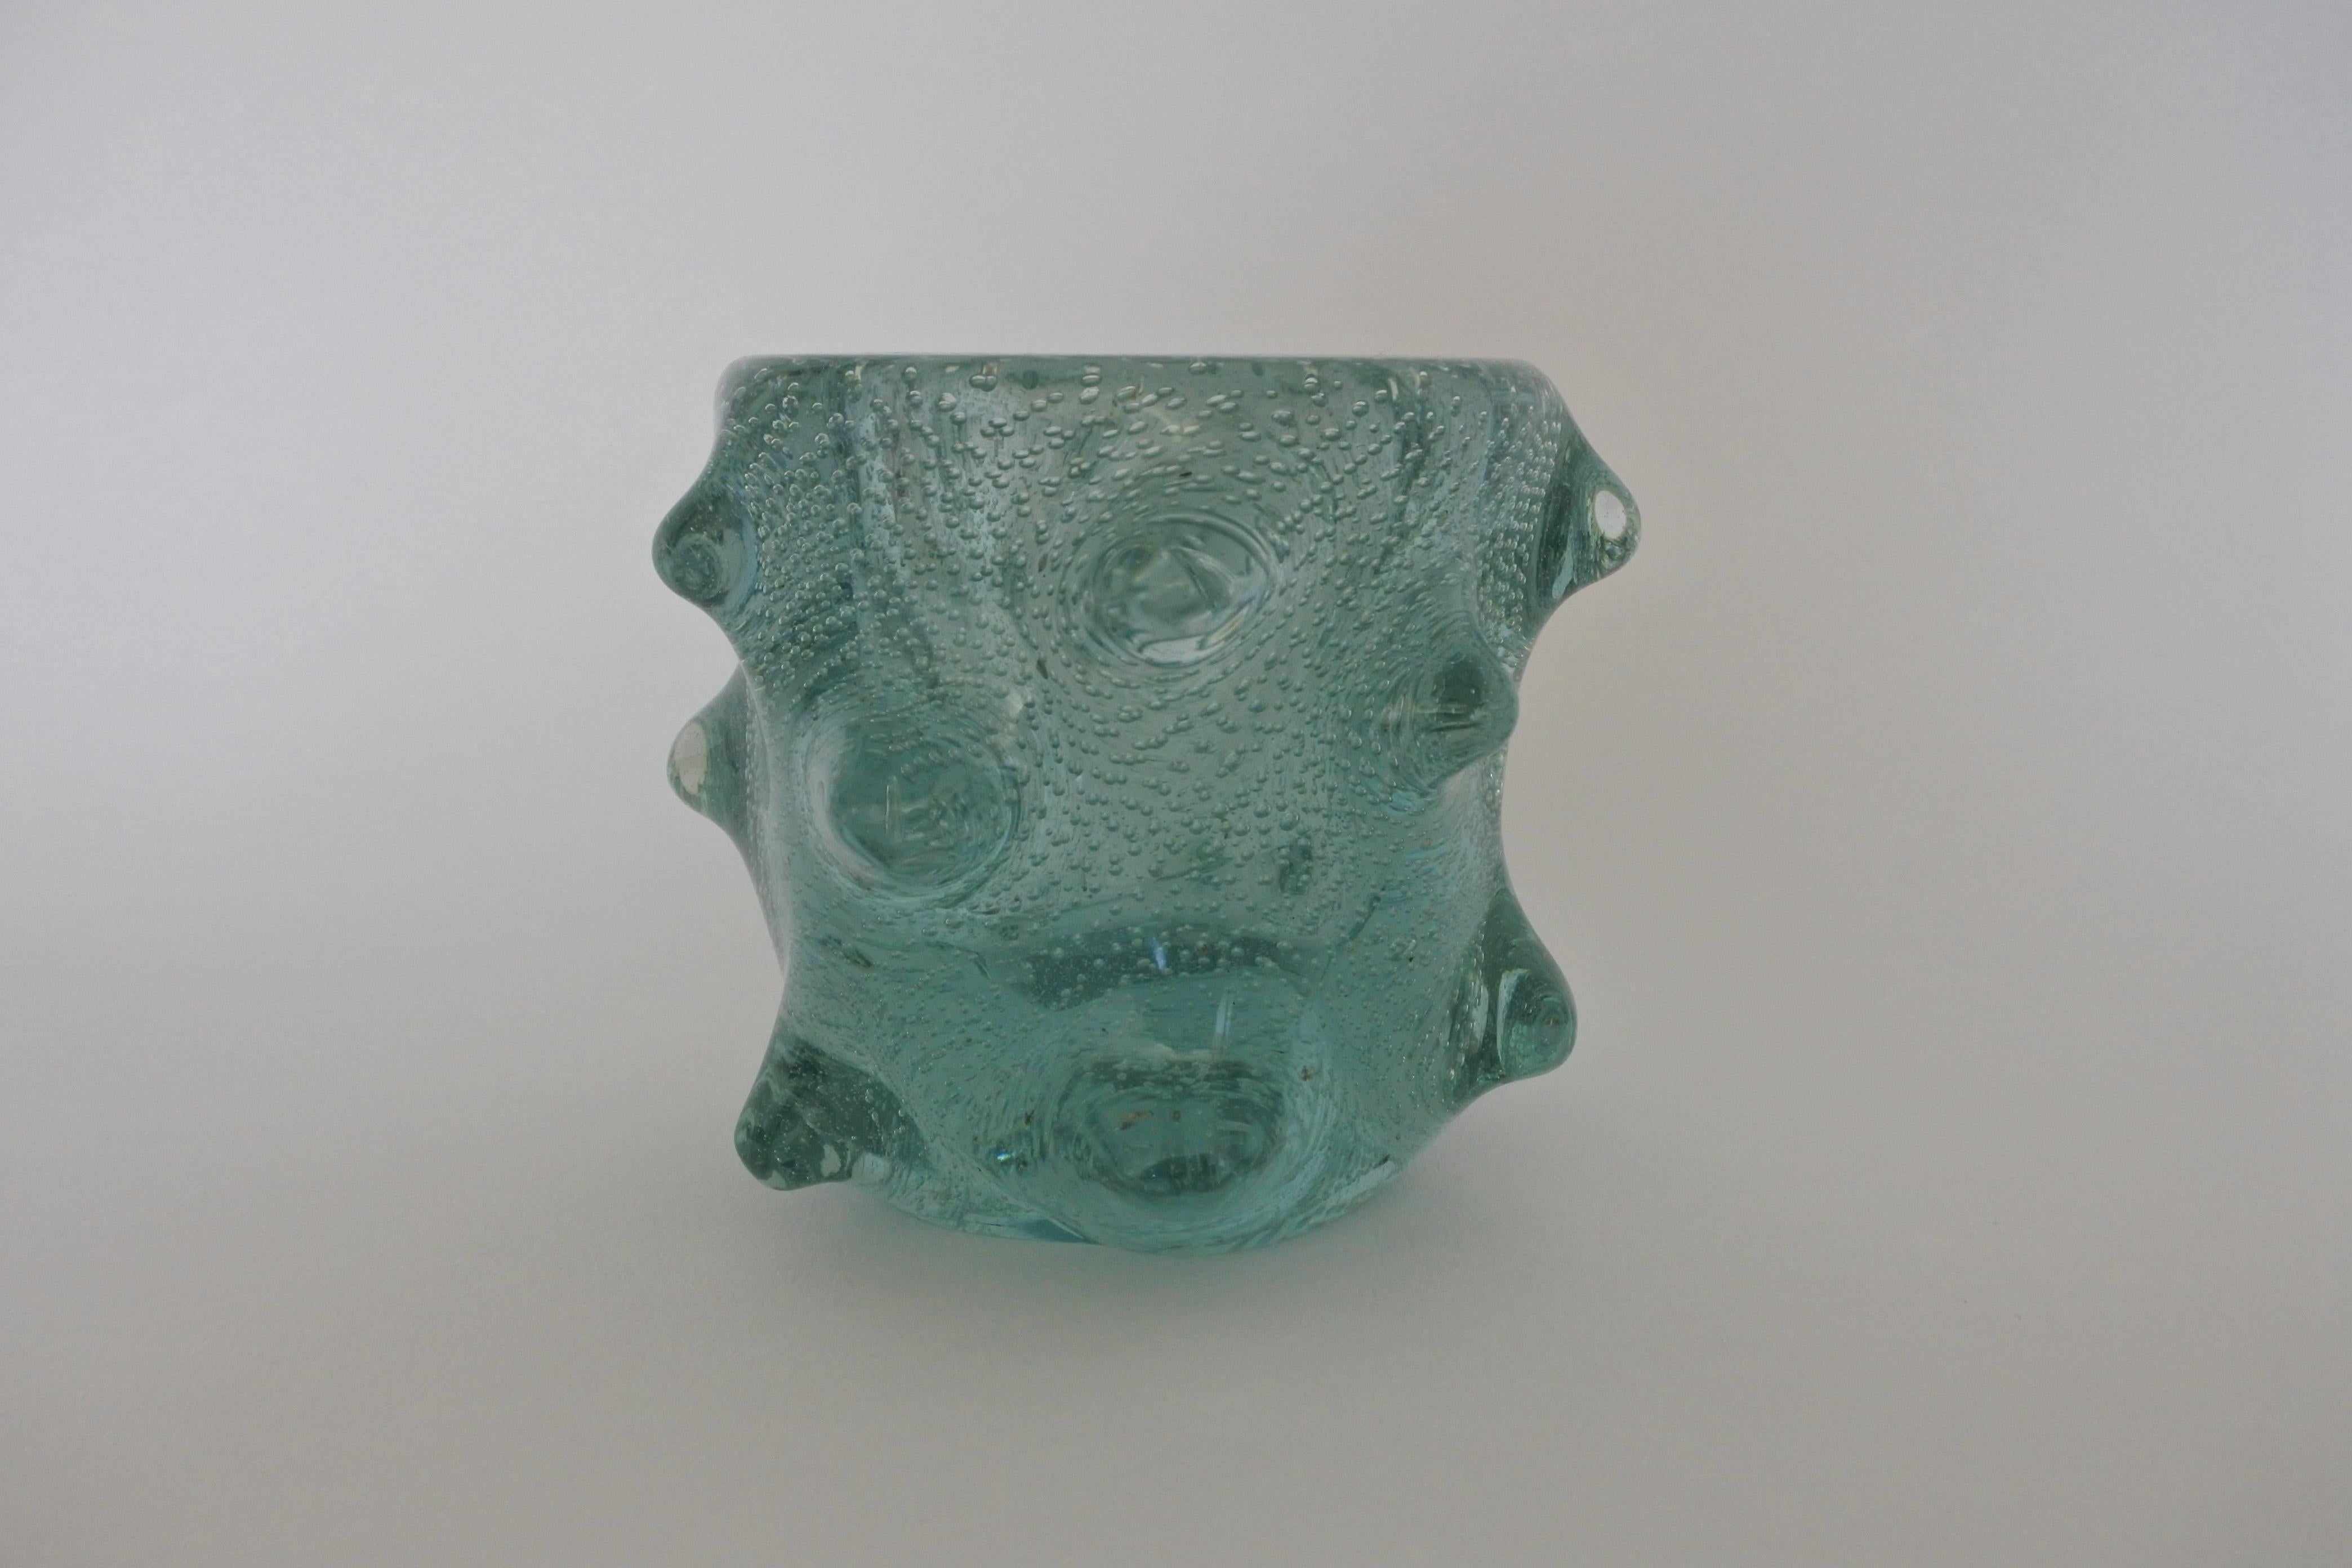 Vase en verre bulle soufflé à la main.
Attribué à Venini.
Fabriqué en Italie dans les années 1960.

Provenant d'une collection unique de verres Venini.